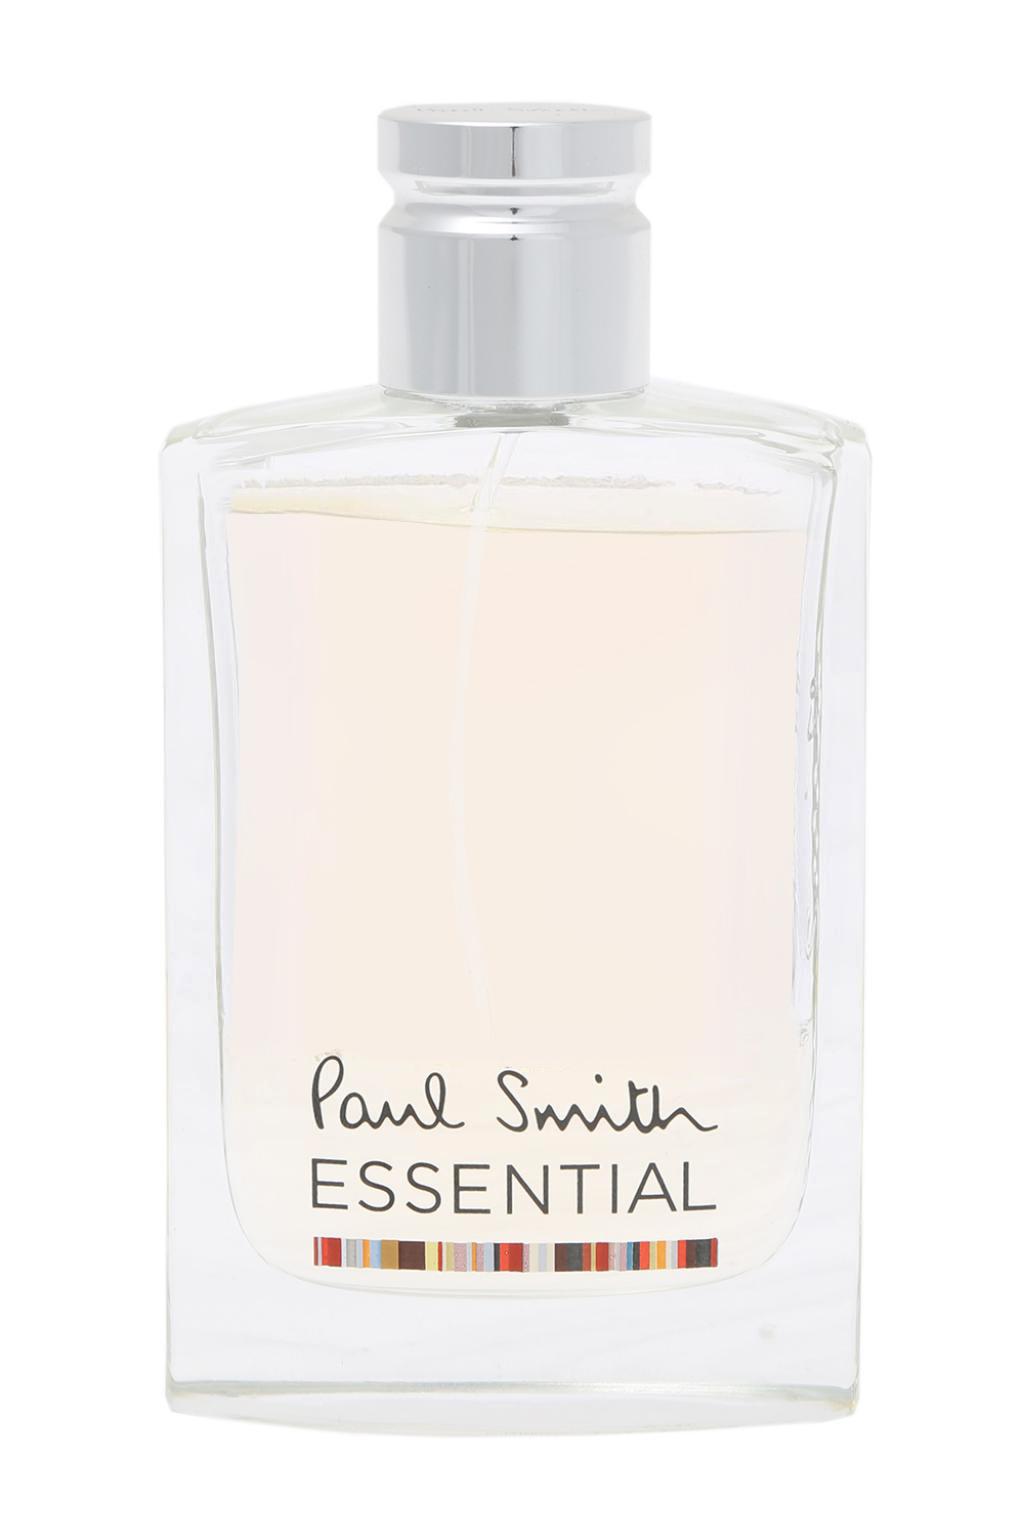 Paul Smith 'Essential' eau de toilette 100ml